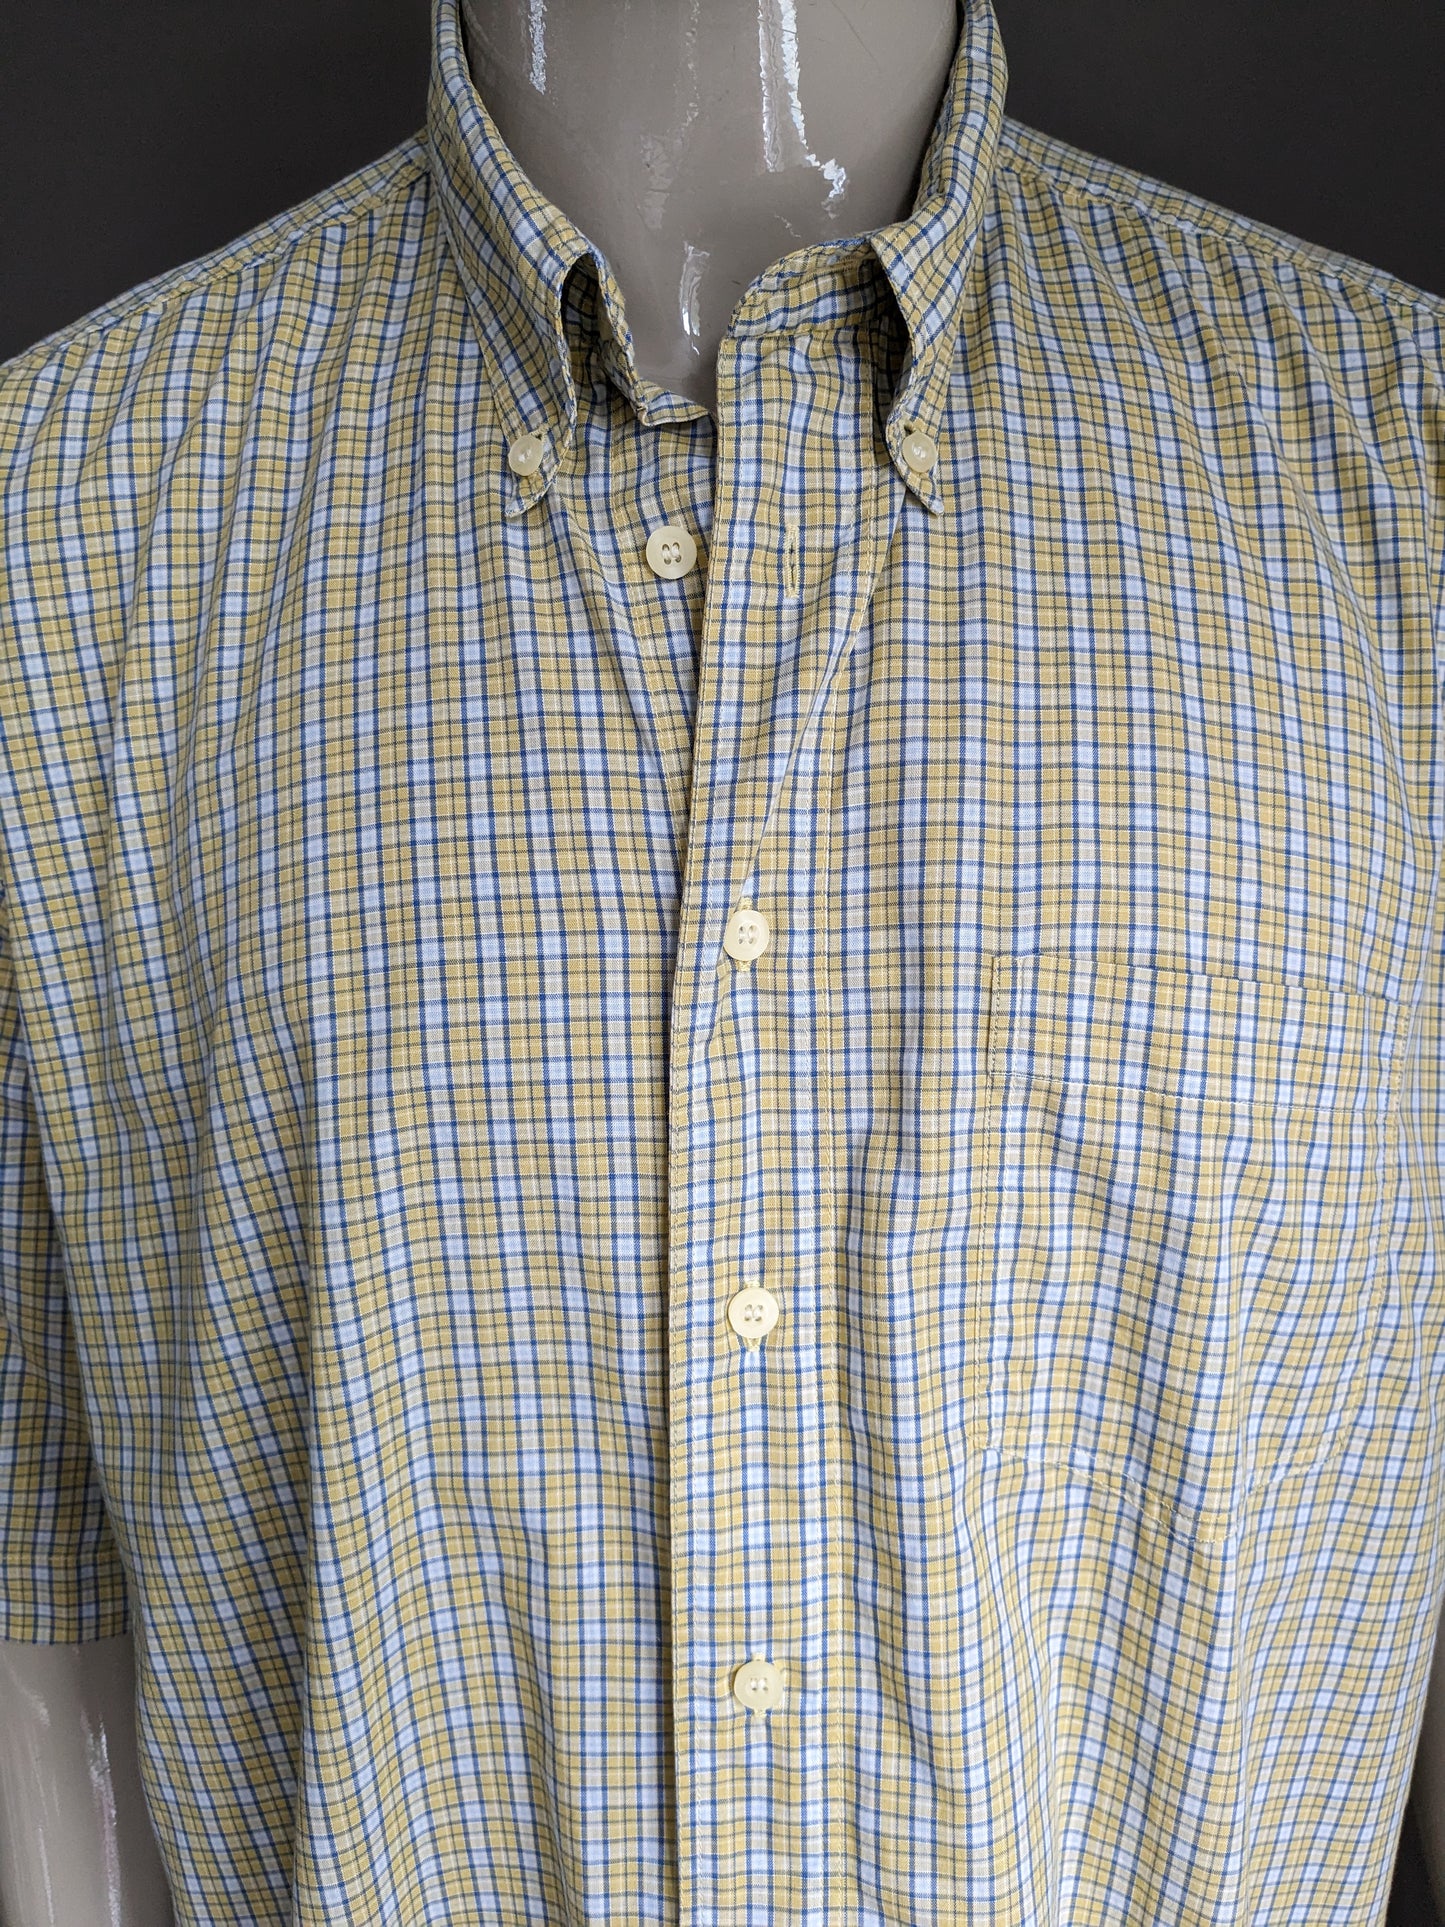 Burton Menswear Shirt Kurzarm. Gelb blau weiß kariert. Größe xxl / 2xl.